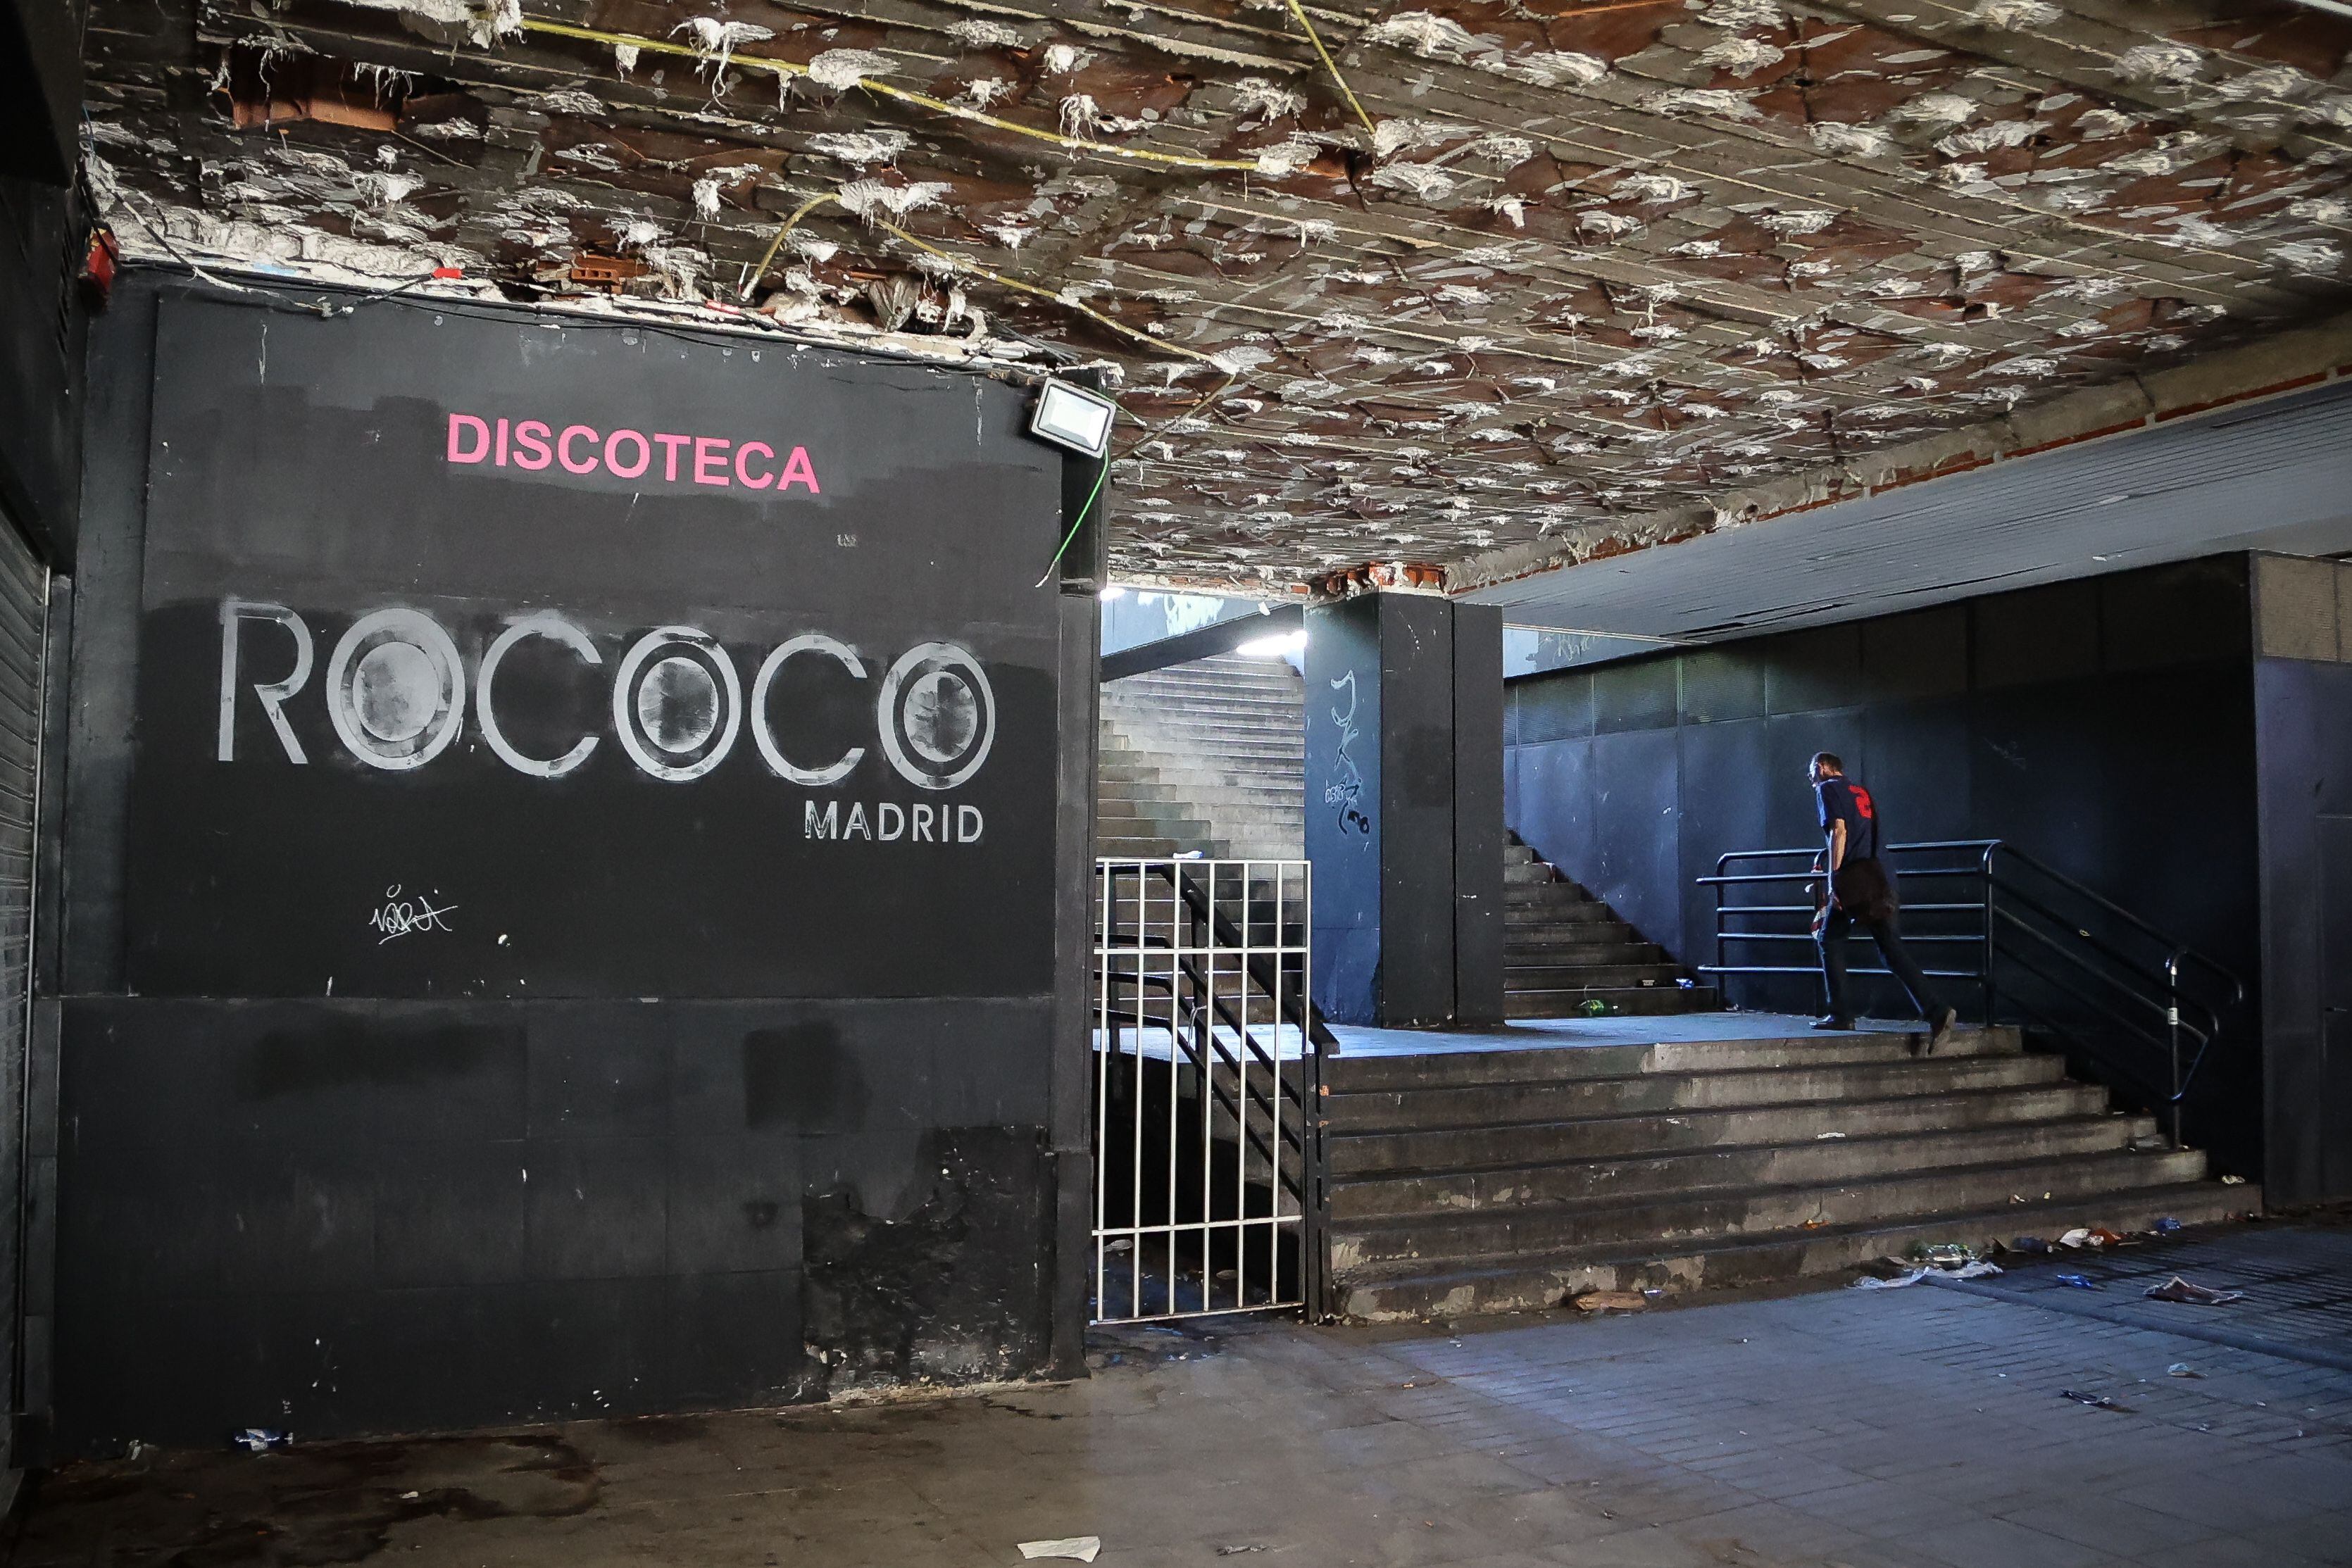 Un hombre sube las escaleras junto al cartel de una de las discotecas de los bajos, en evidente estado de abandono.